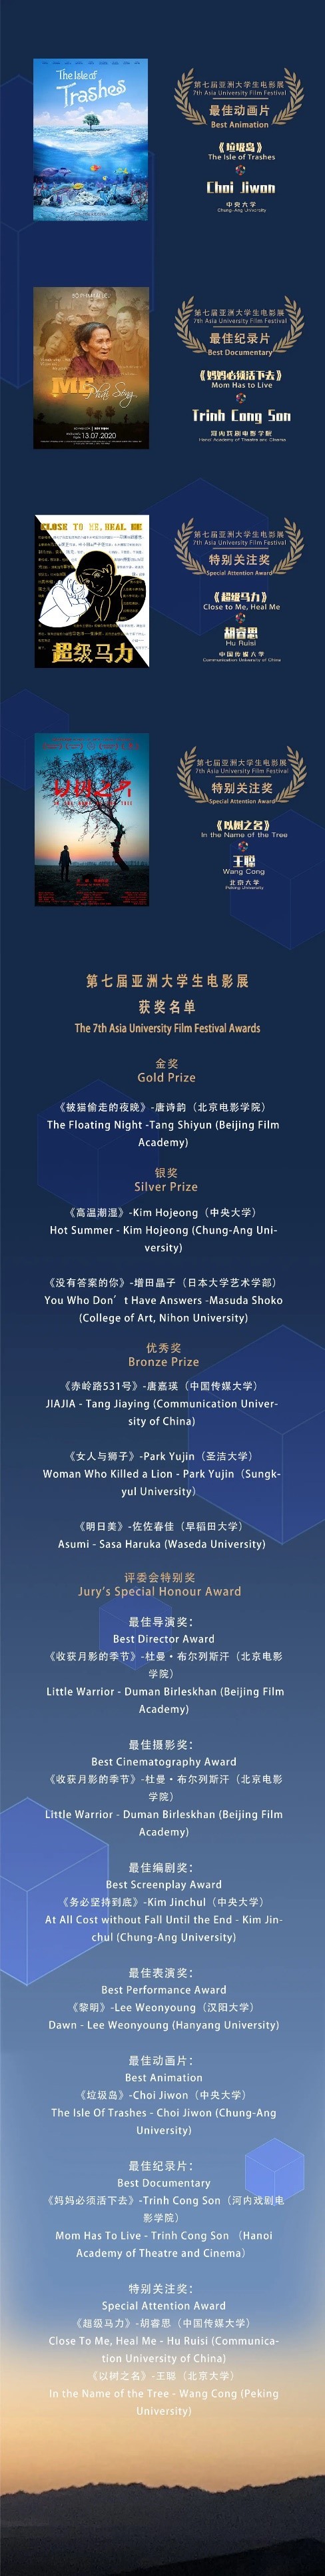 第七届亚洲大学生电影展获奖名单1.jpg